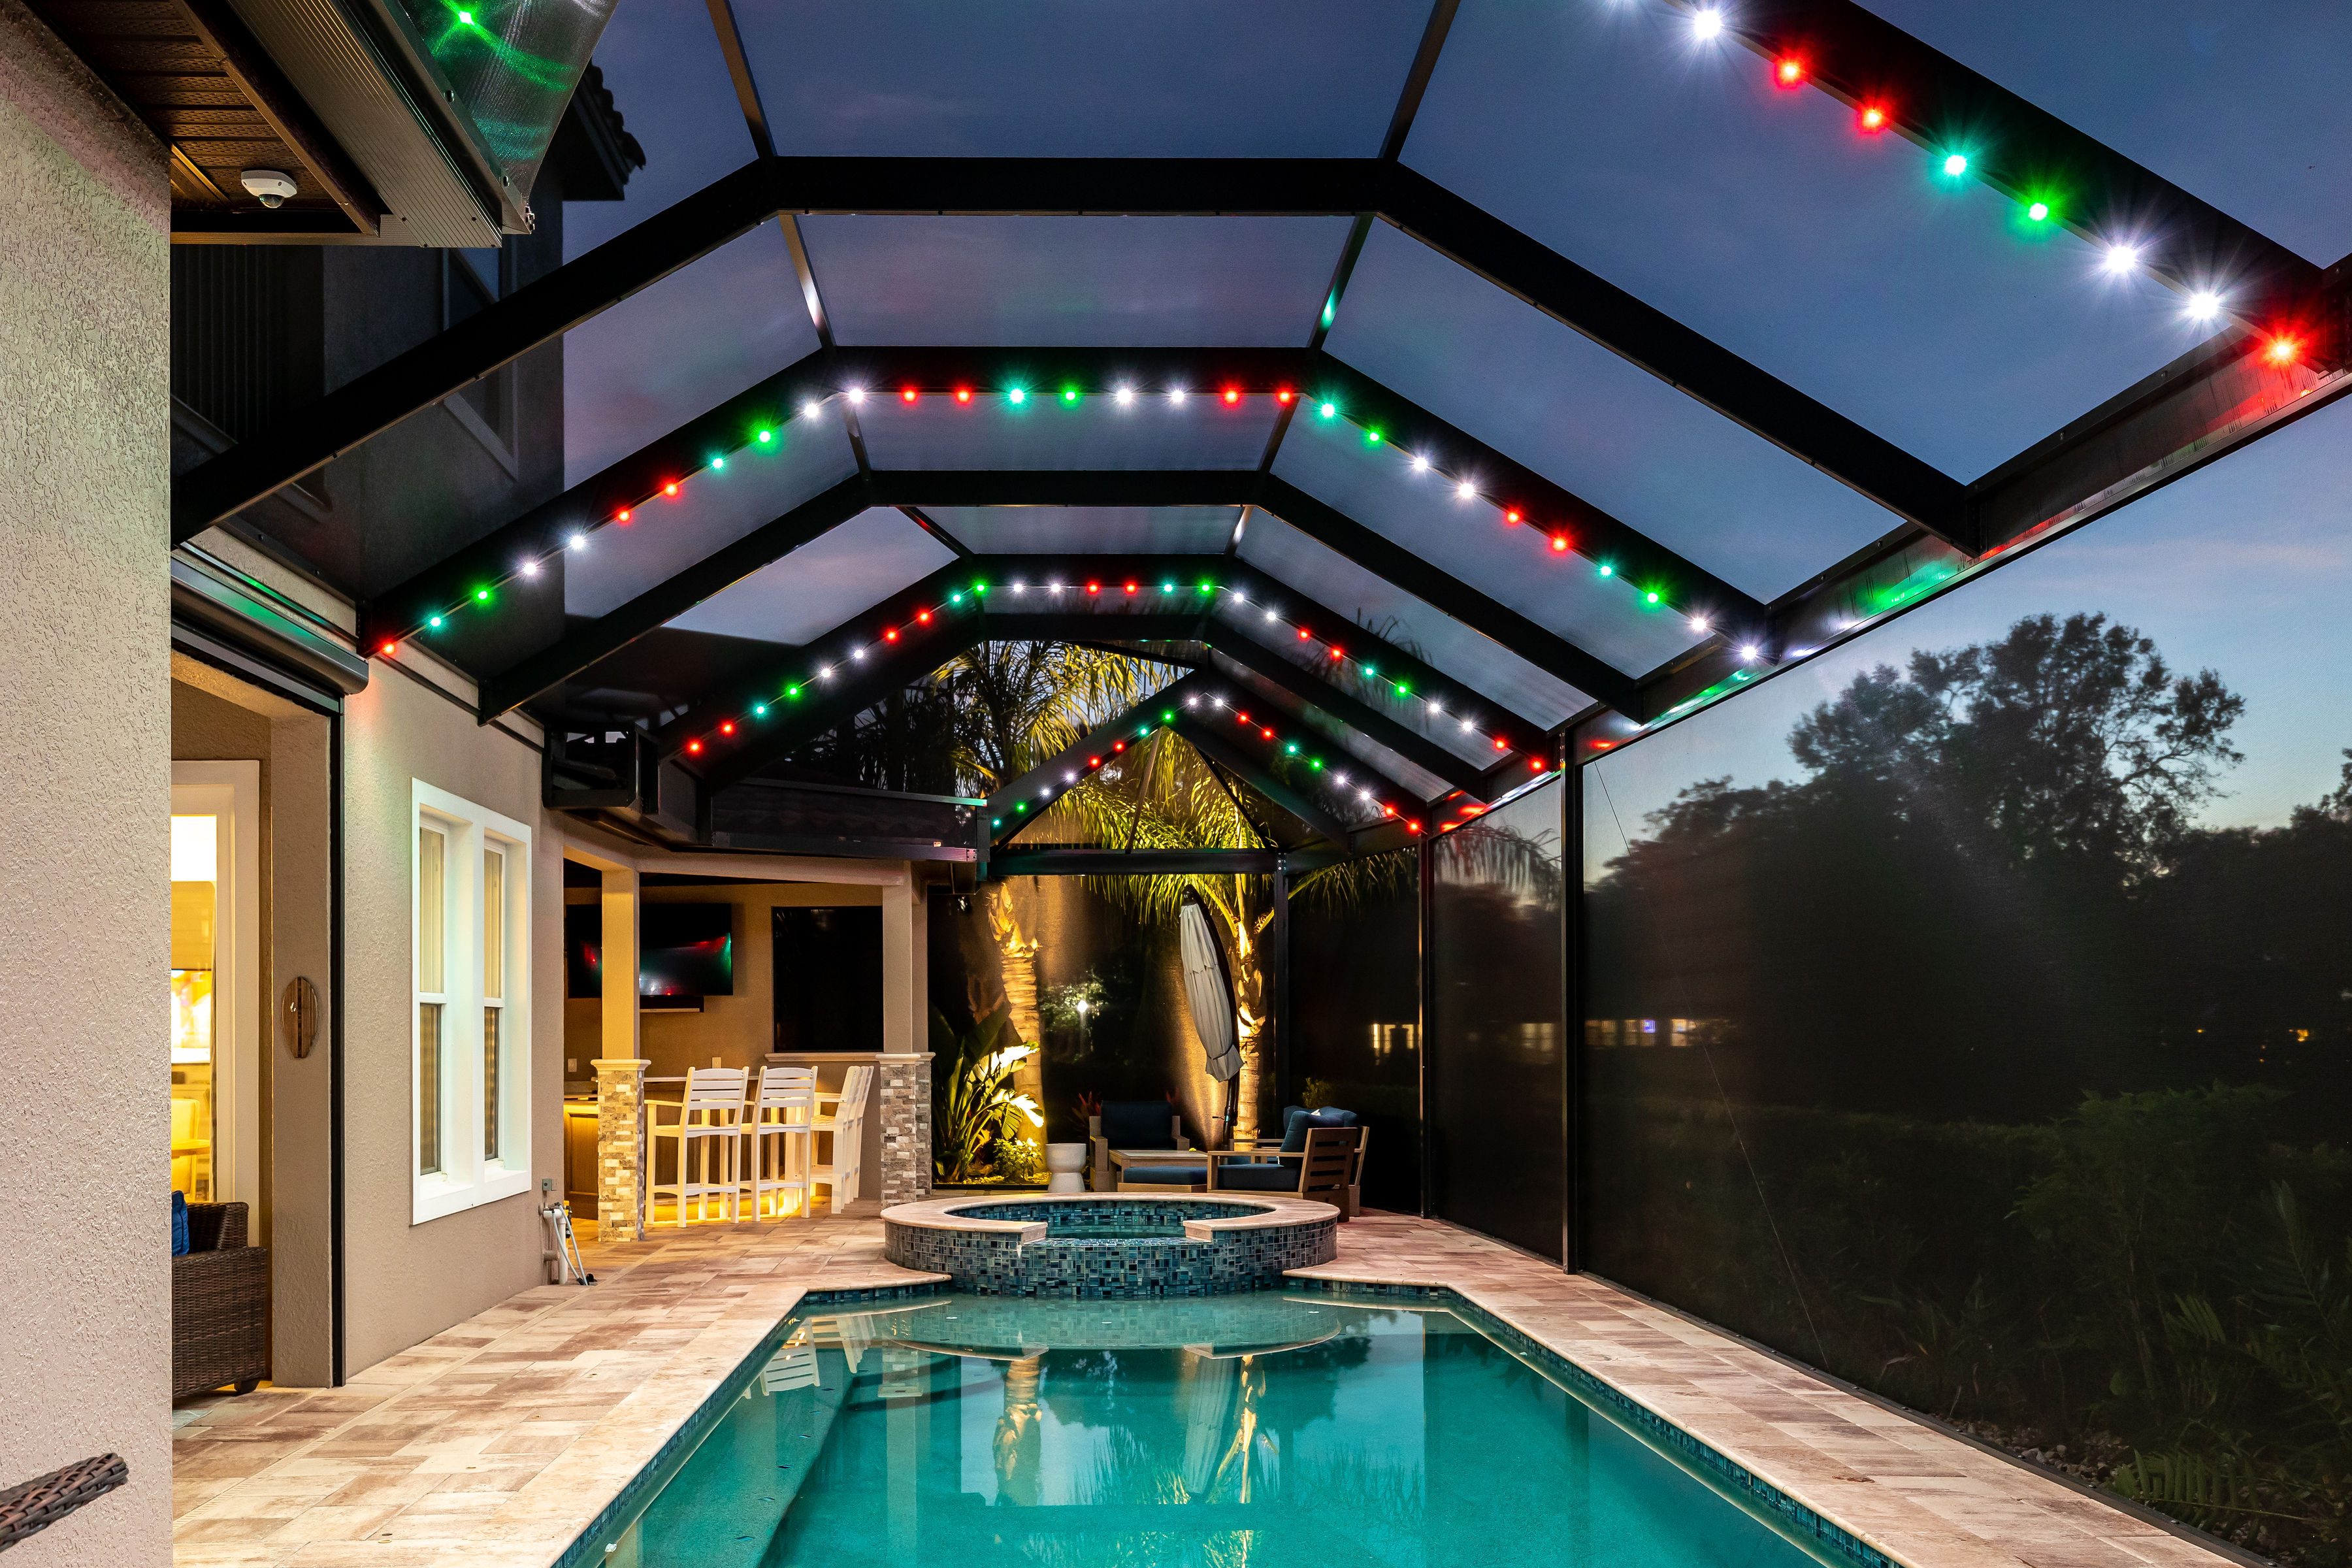 pool house with christmas lights